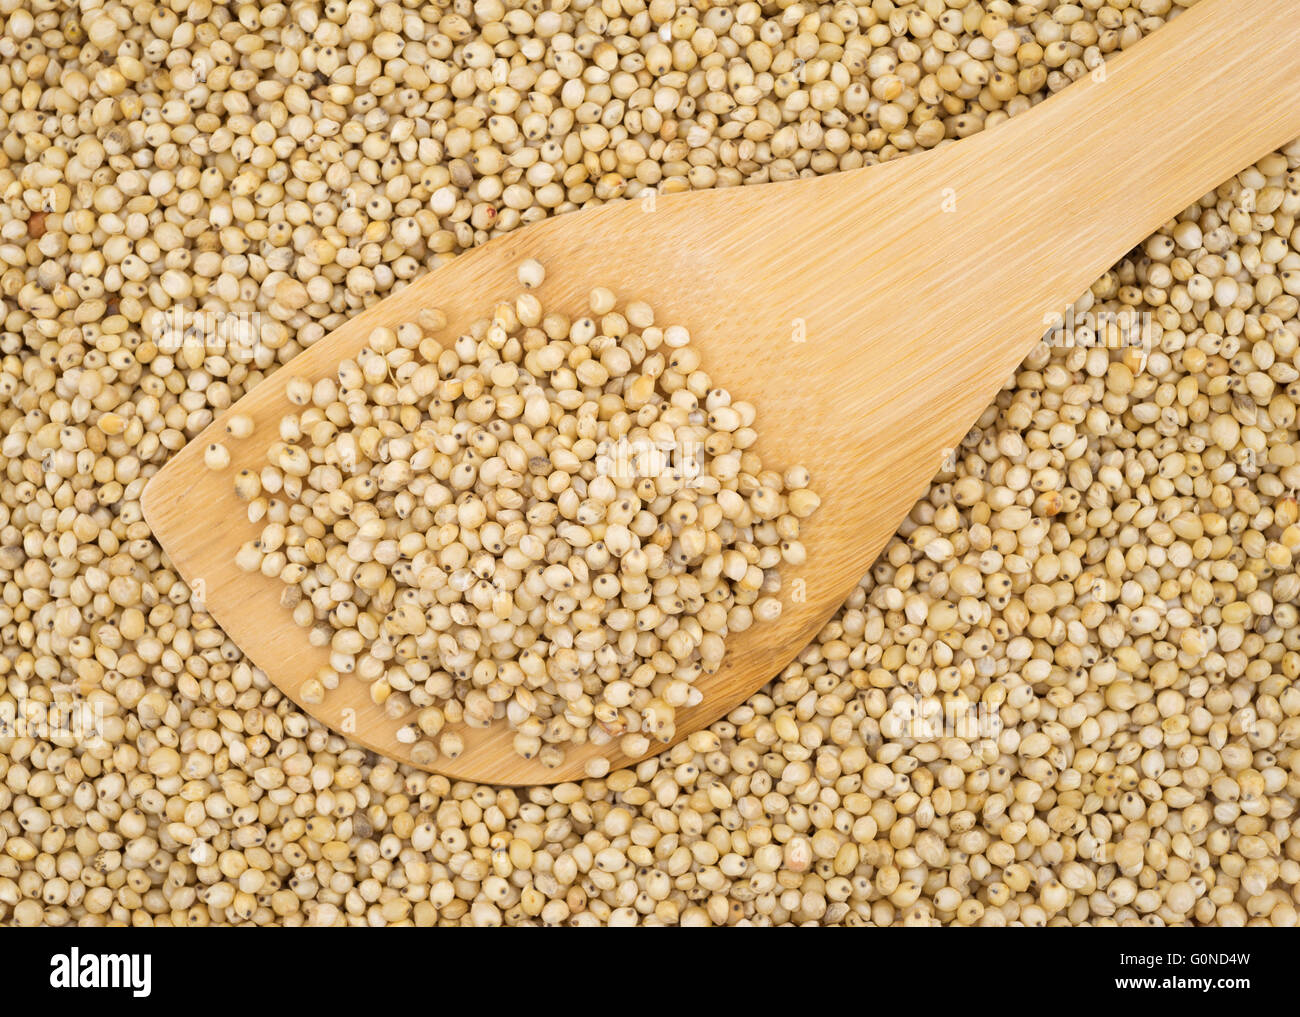 Inizio chiudi la vista di un piccolo cucchiaio di legno riempita con tutto il grano di sorgo di organico in cima più semi. Foto Stock